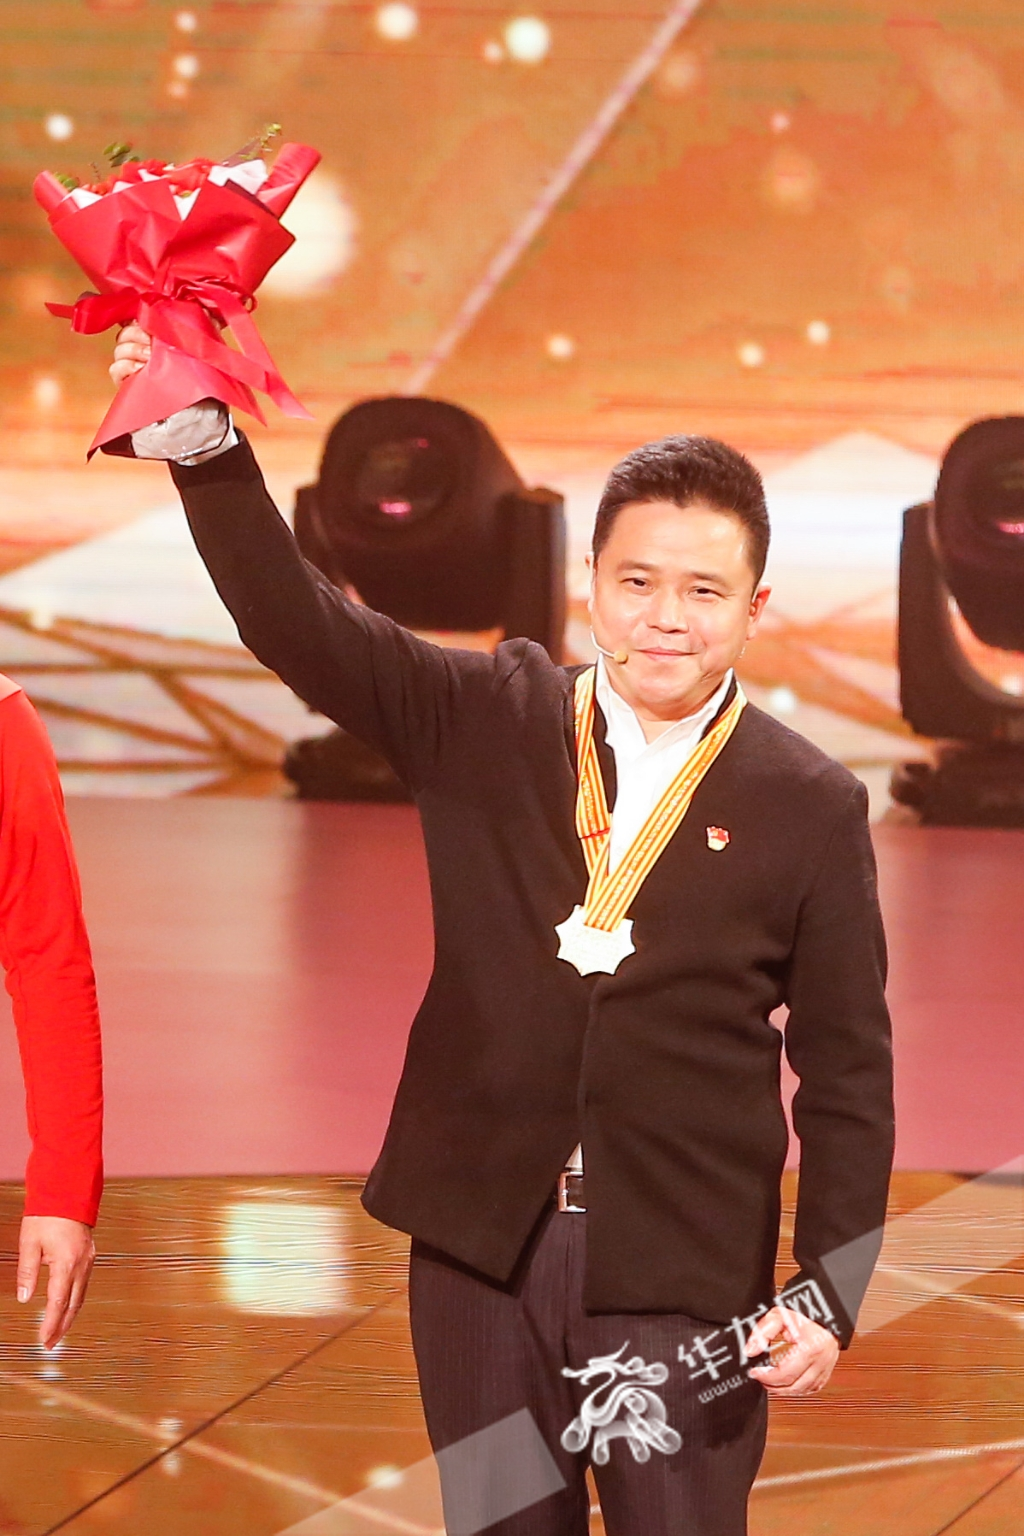 庞茂琨在颁奖典礼上。华龙网-新重庆客户端记者 石涛 摄